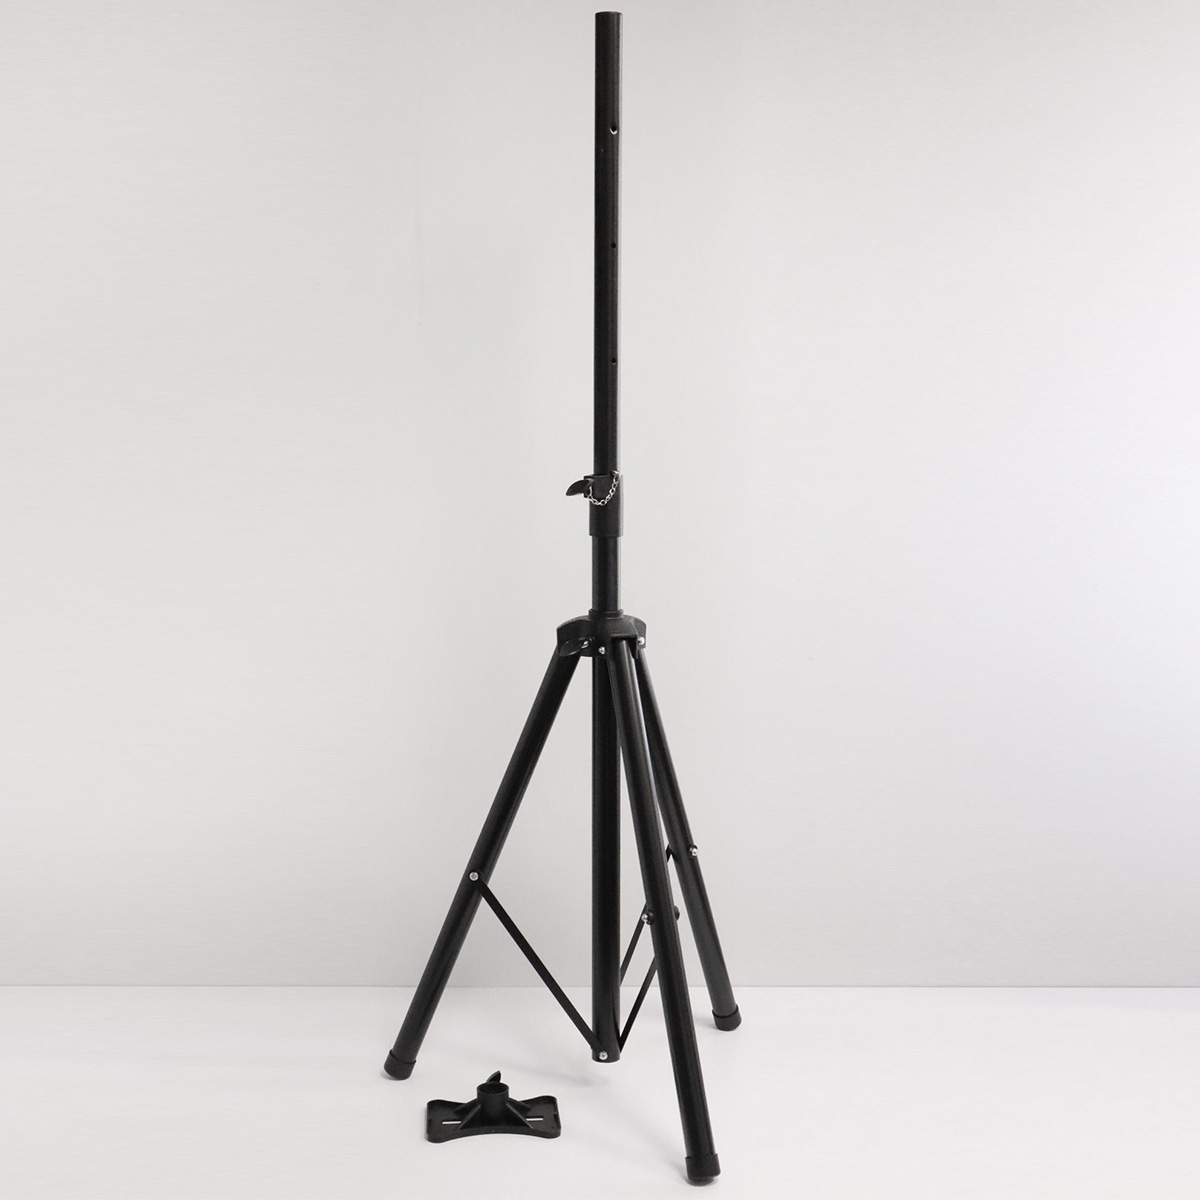 Штатив, стойка профессиональная для аудиоколонки, speaker stand, с площадкой, регулировка высоты 90 - 180 см, цвет черный